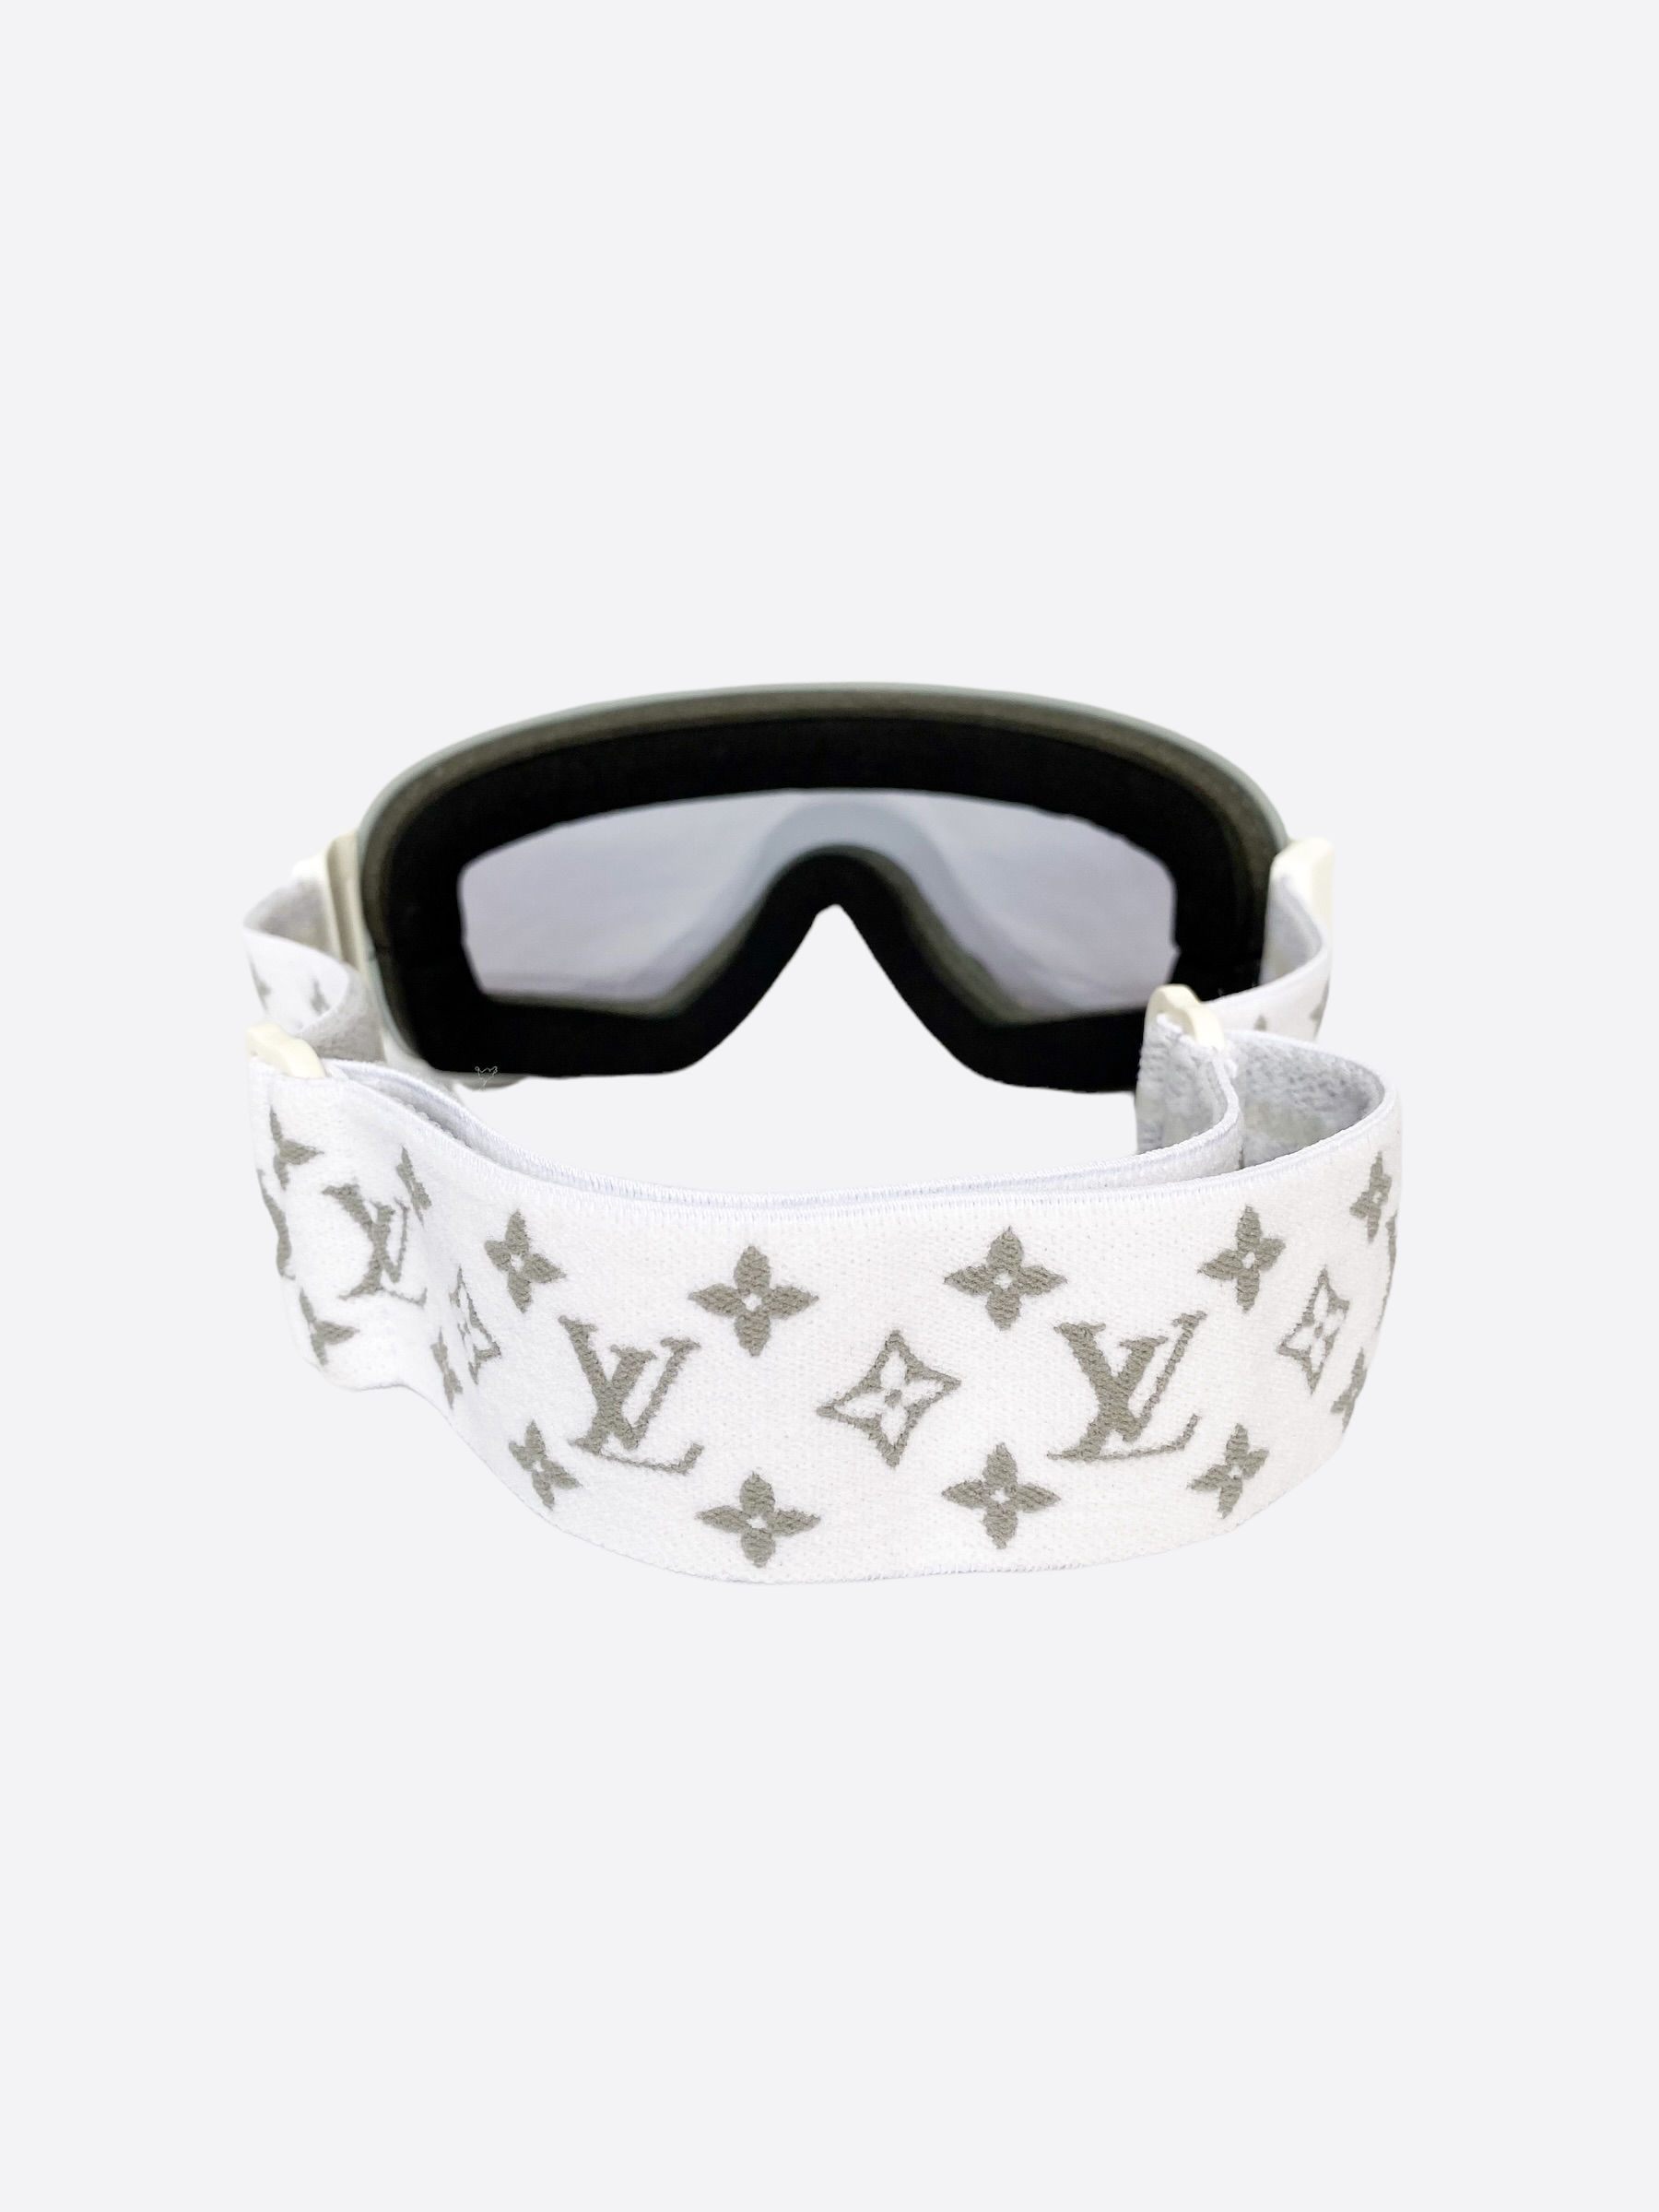 louis vuitton ski goggles｜TikTok Search